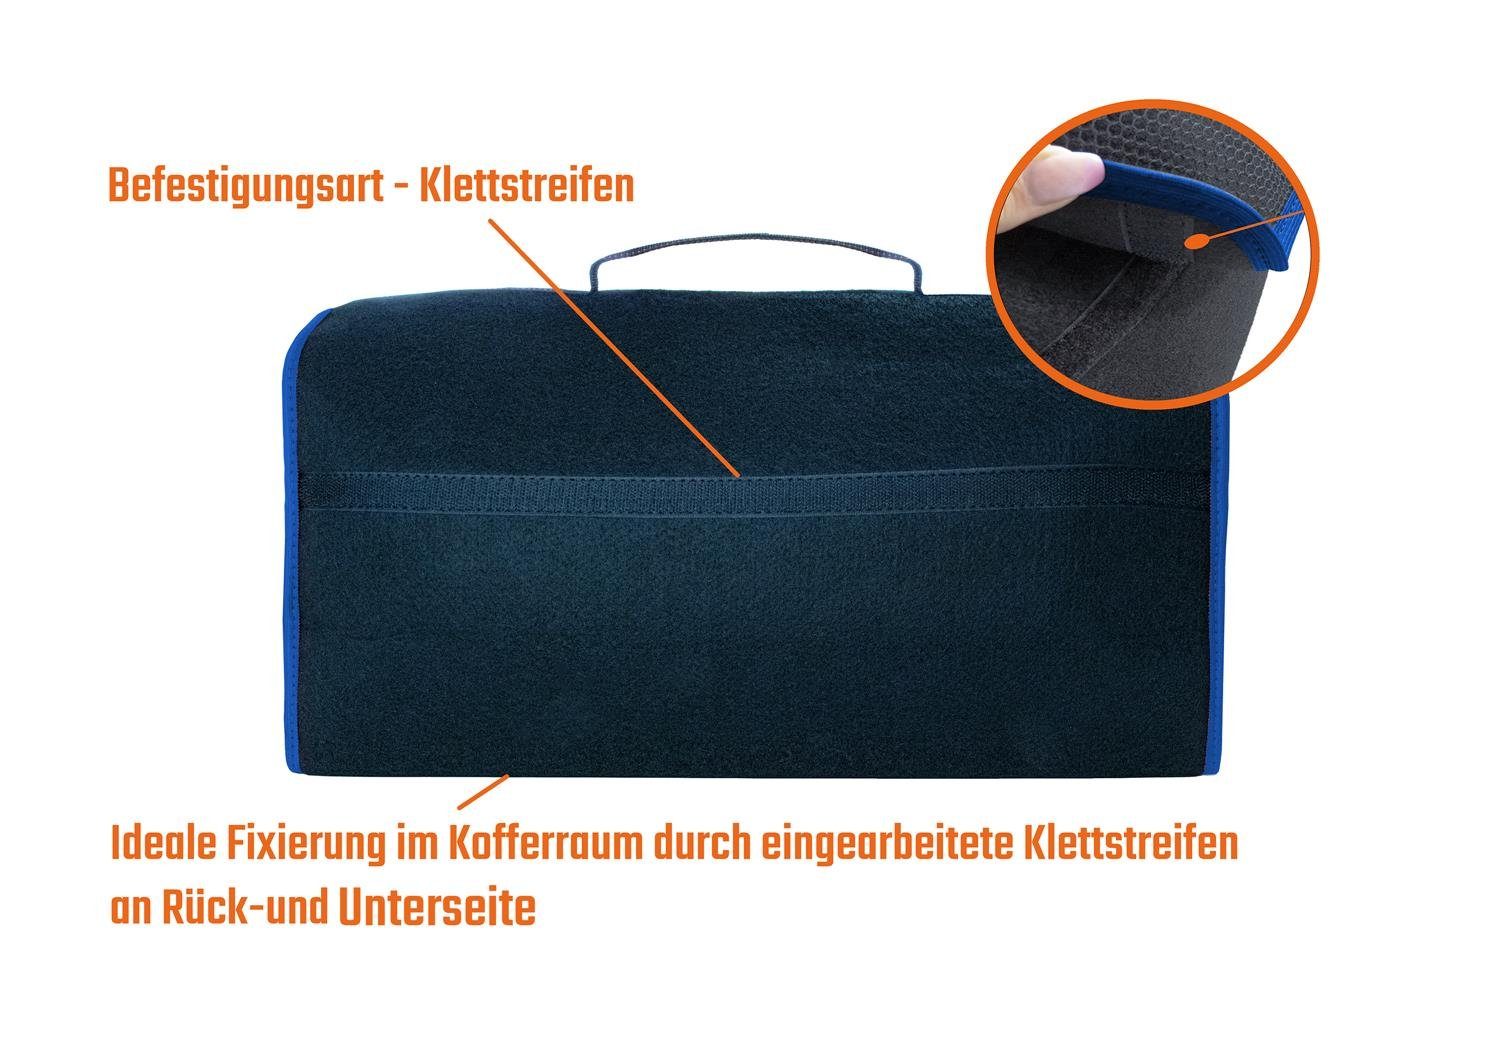 L & P Car Design in Schwarz Auto Rand farbigem Kofferraumtasche Organizer schwarz mit Saum blauem mit